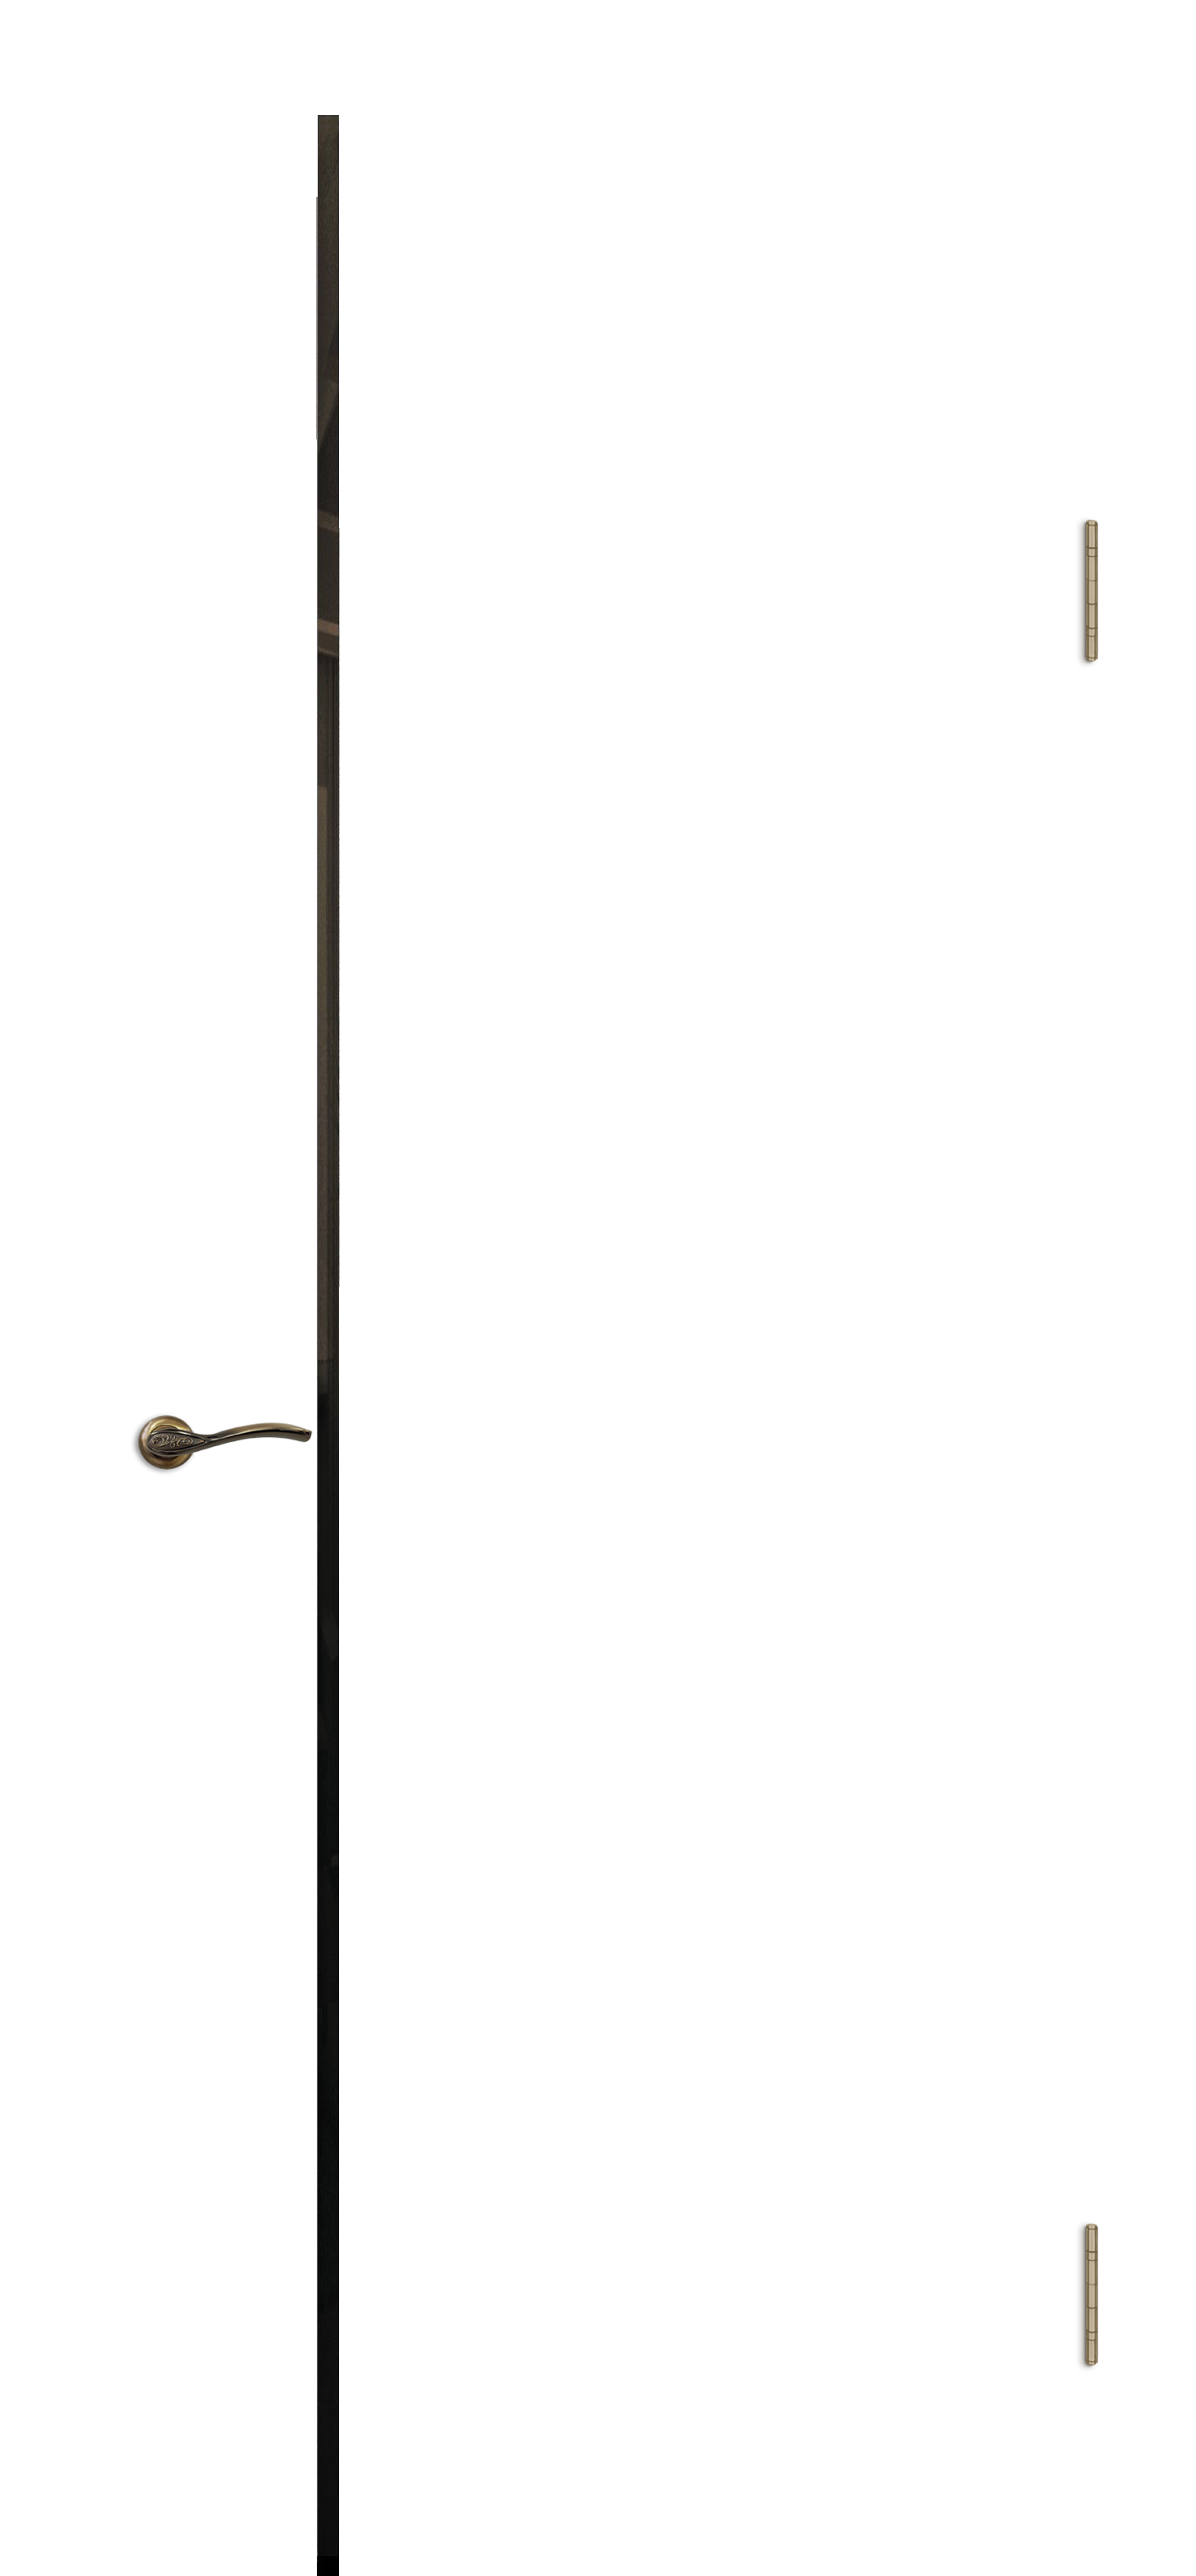 Межкомнатная дверь «Камелия К-10». Вид отделки Тон 10 вертикальный шпон Остекление: Черный триплекс Cтандартный наличник